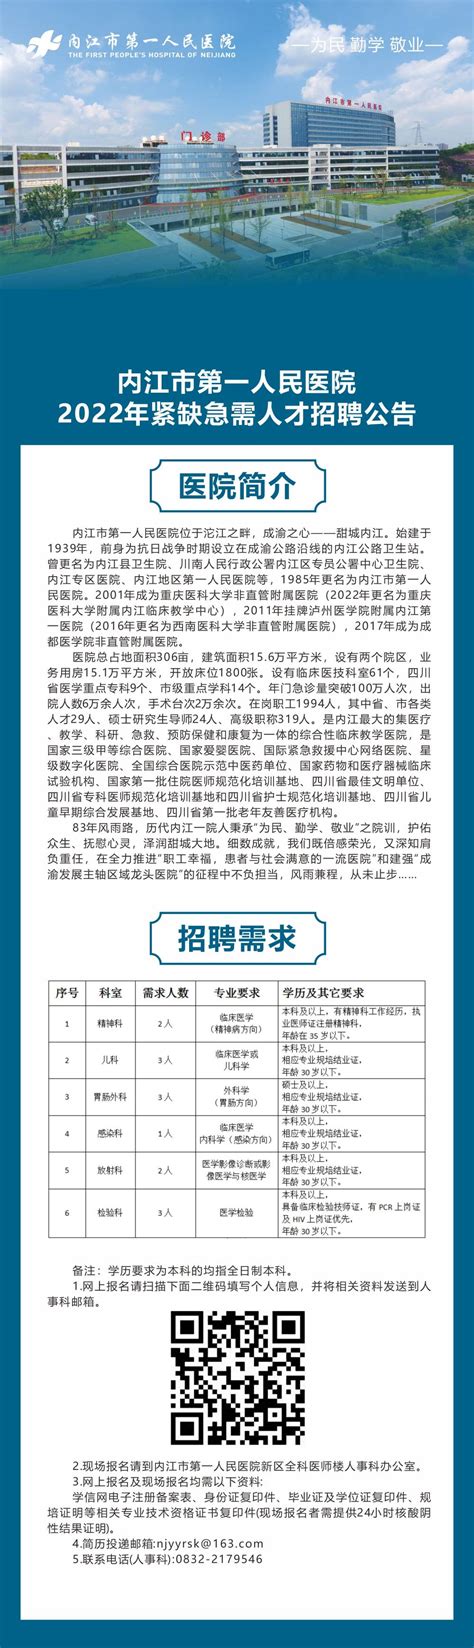 内江市第一人民医院2022年紧缺急需人才招聘公告-内江市第一人民医院